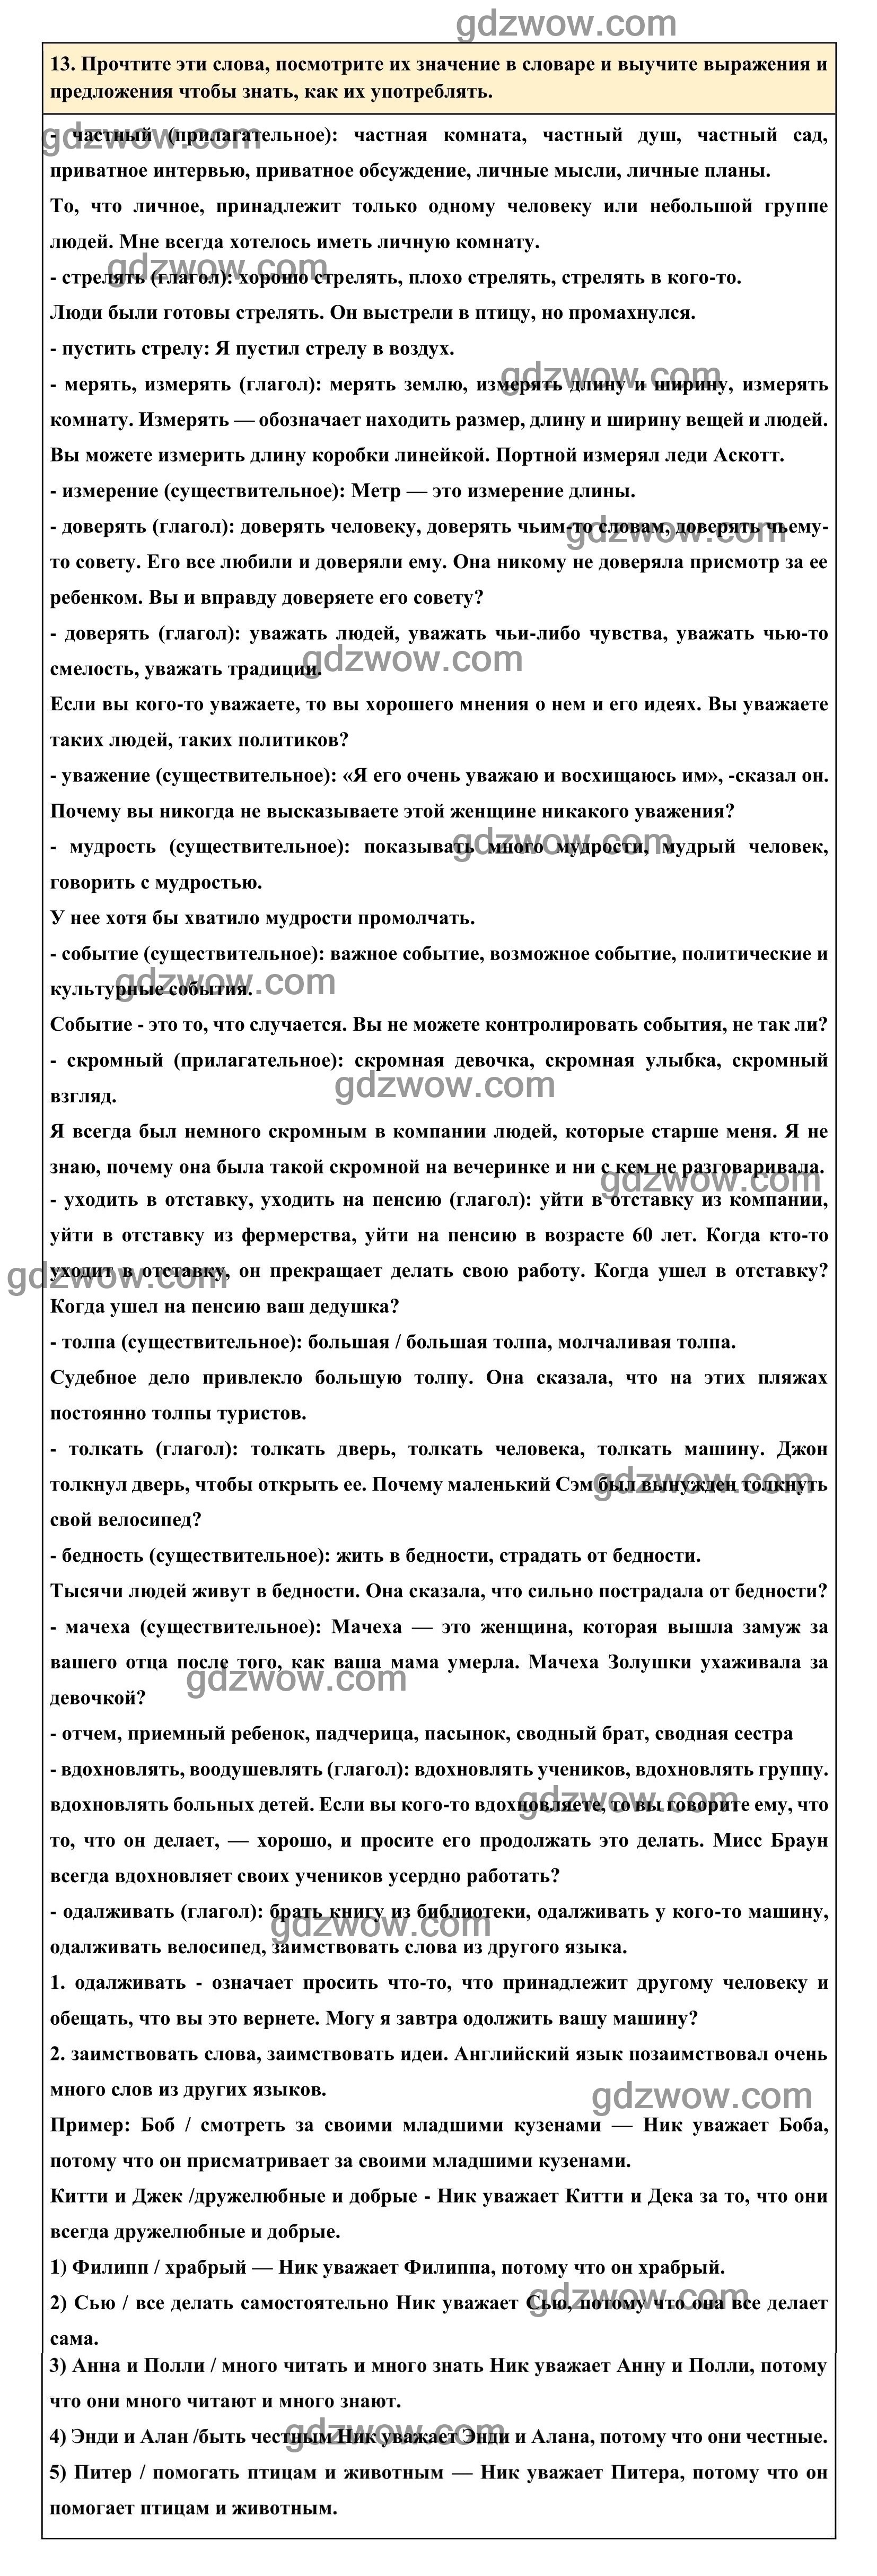 Номер 13 - ГДЗ по Английскому языку для 6 класса Учебник Афанасьева, Михеева. Unit 18. (решебник) - GDZwow